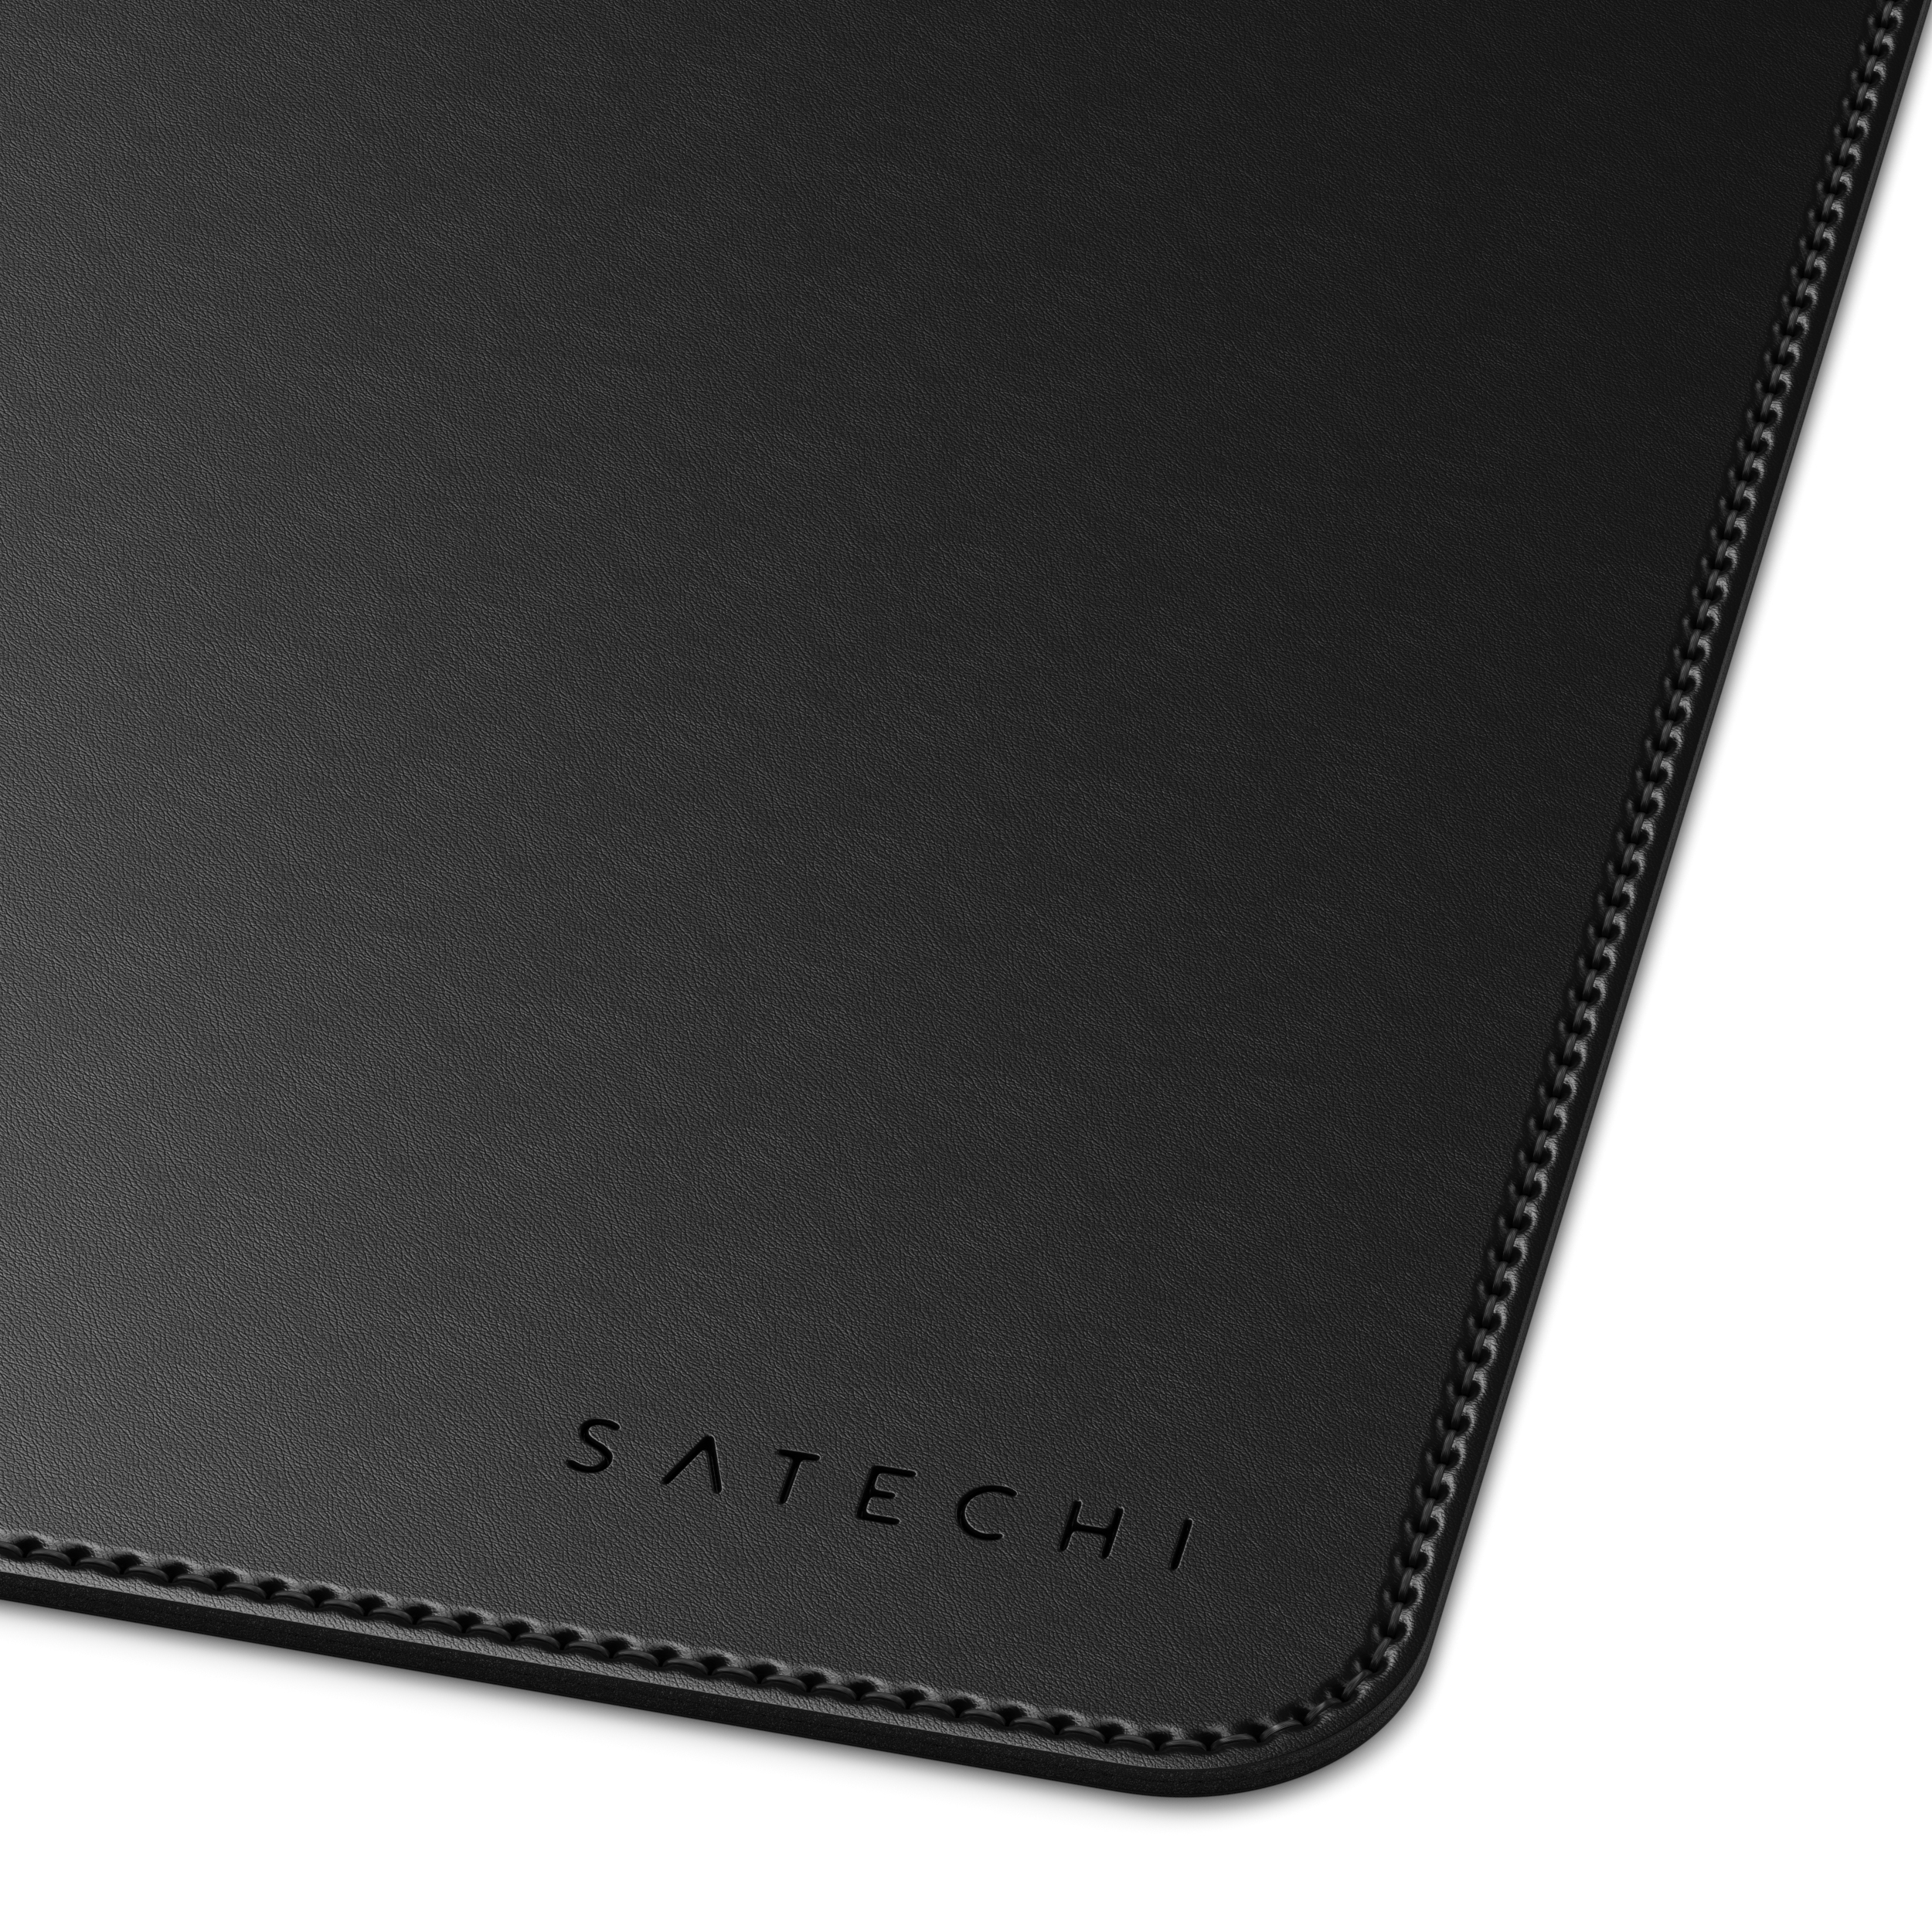 Black cm) 58,42 (31 Deskmate cm Eco-Leather Mousepad - SATECHI x